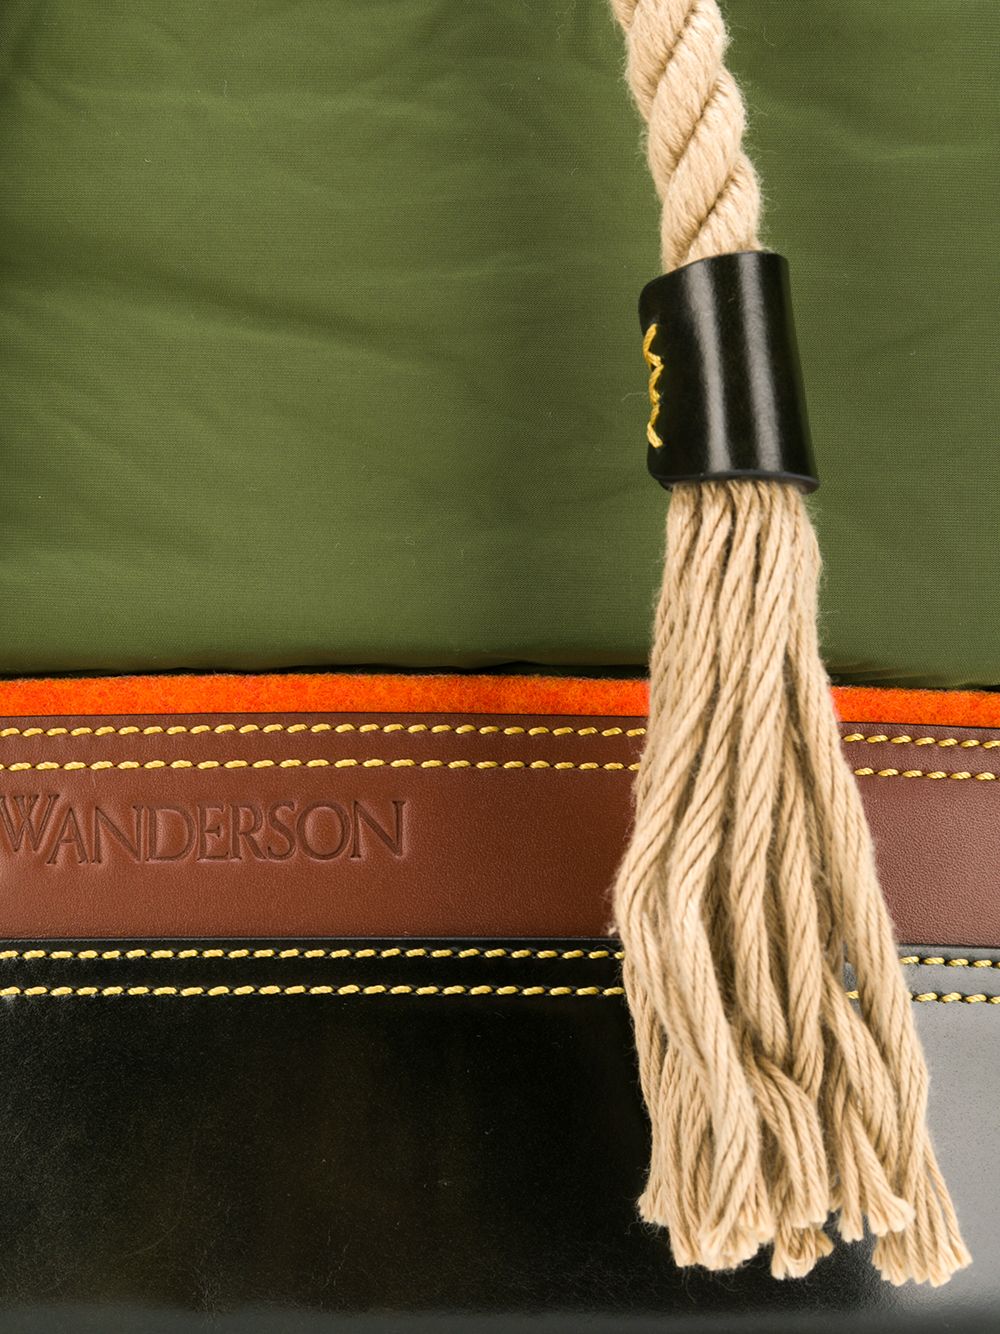 фото Jw anderson рюкзак дизайна колор-блок